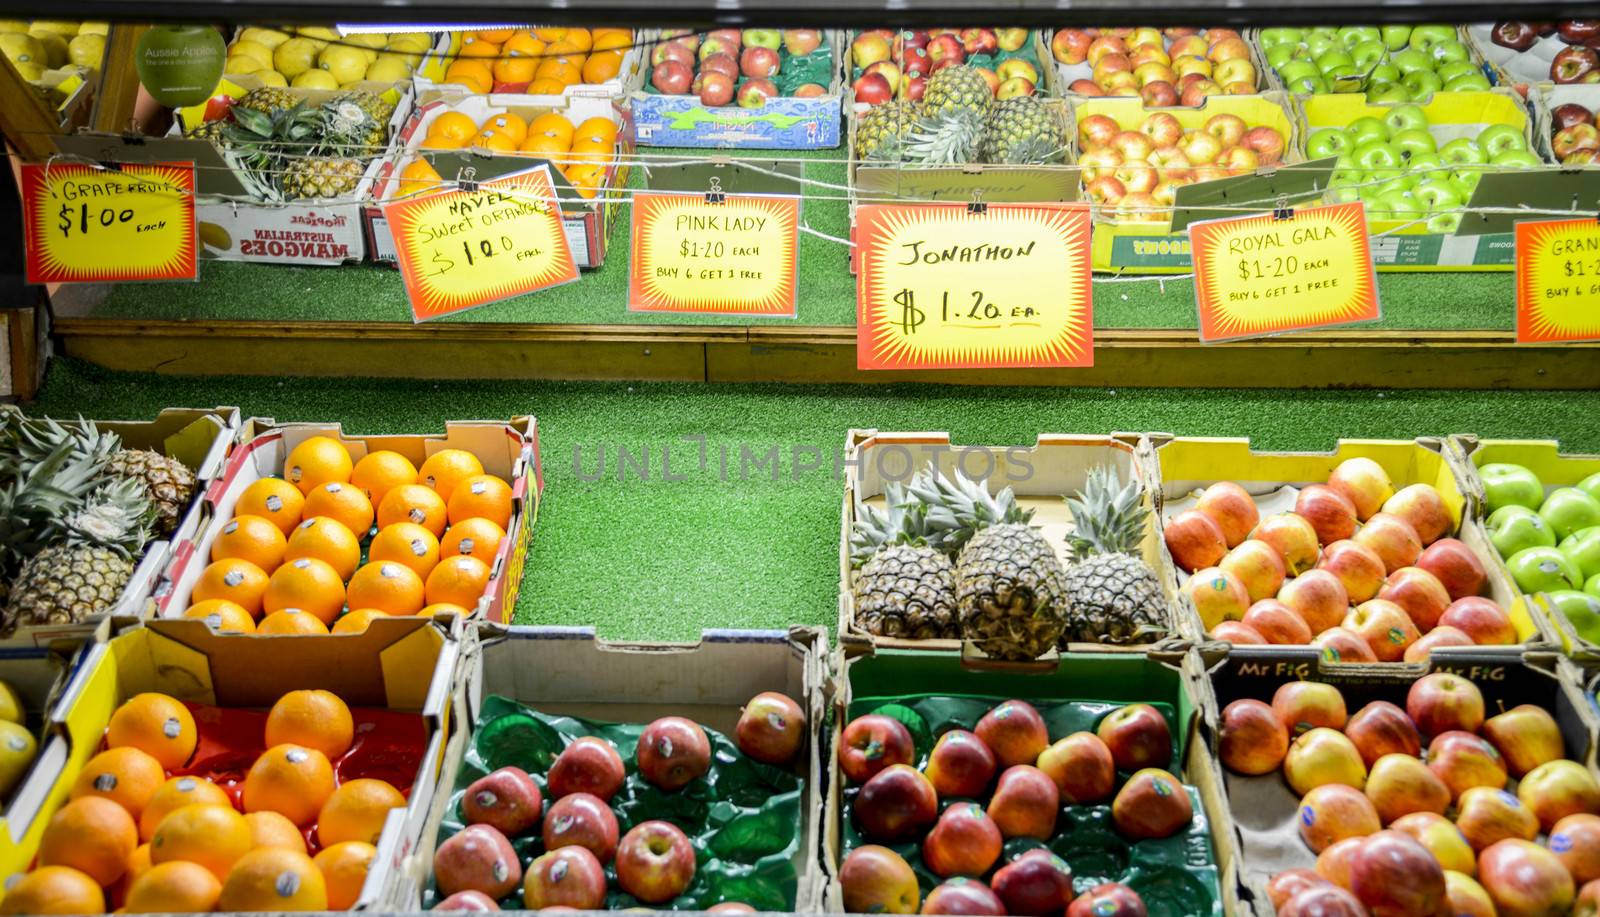 Sale fruits in Grocery by gjeerawut